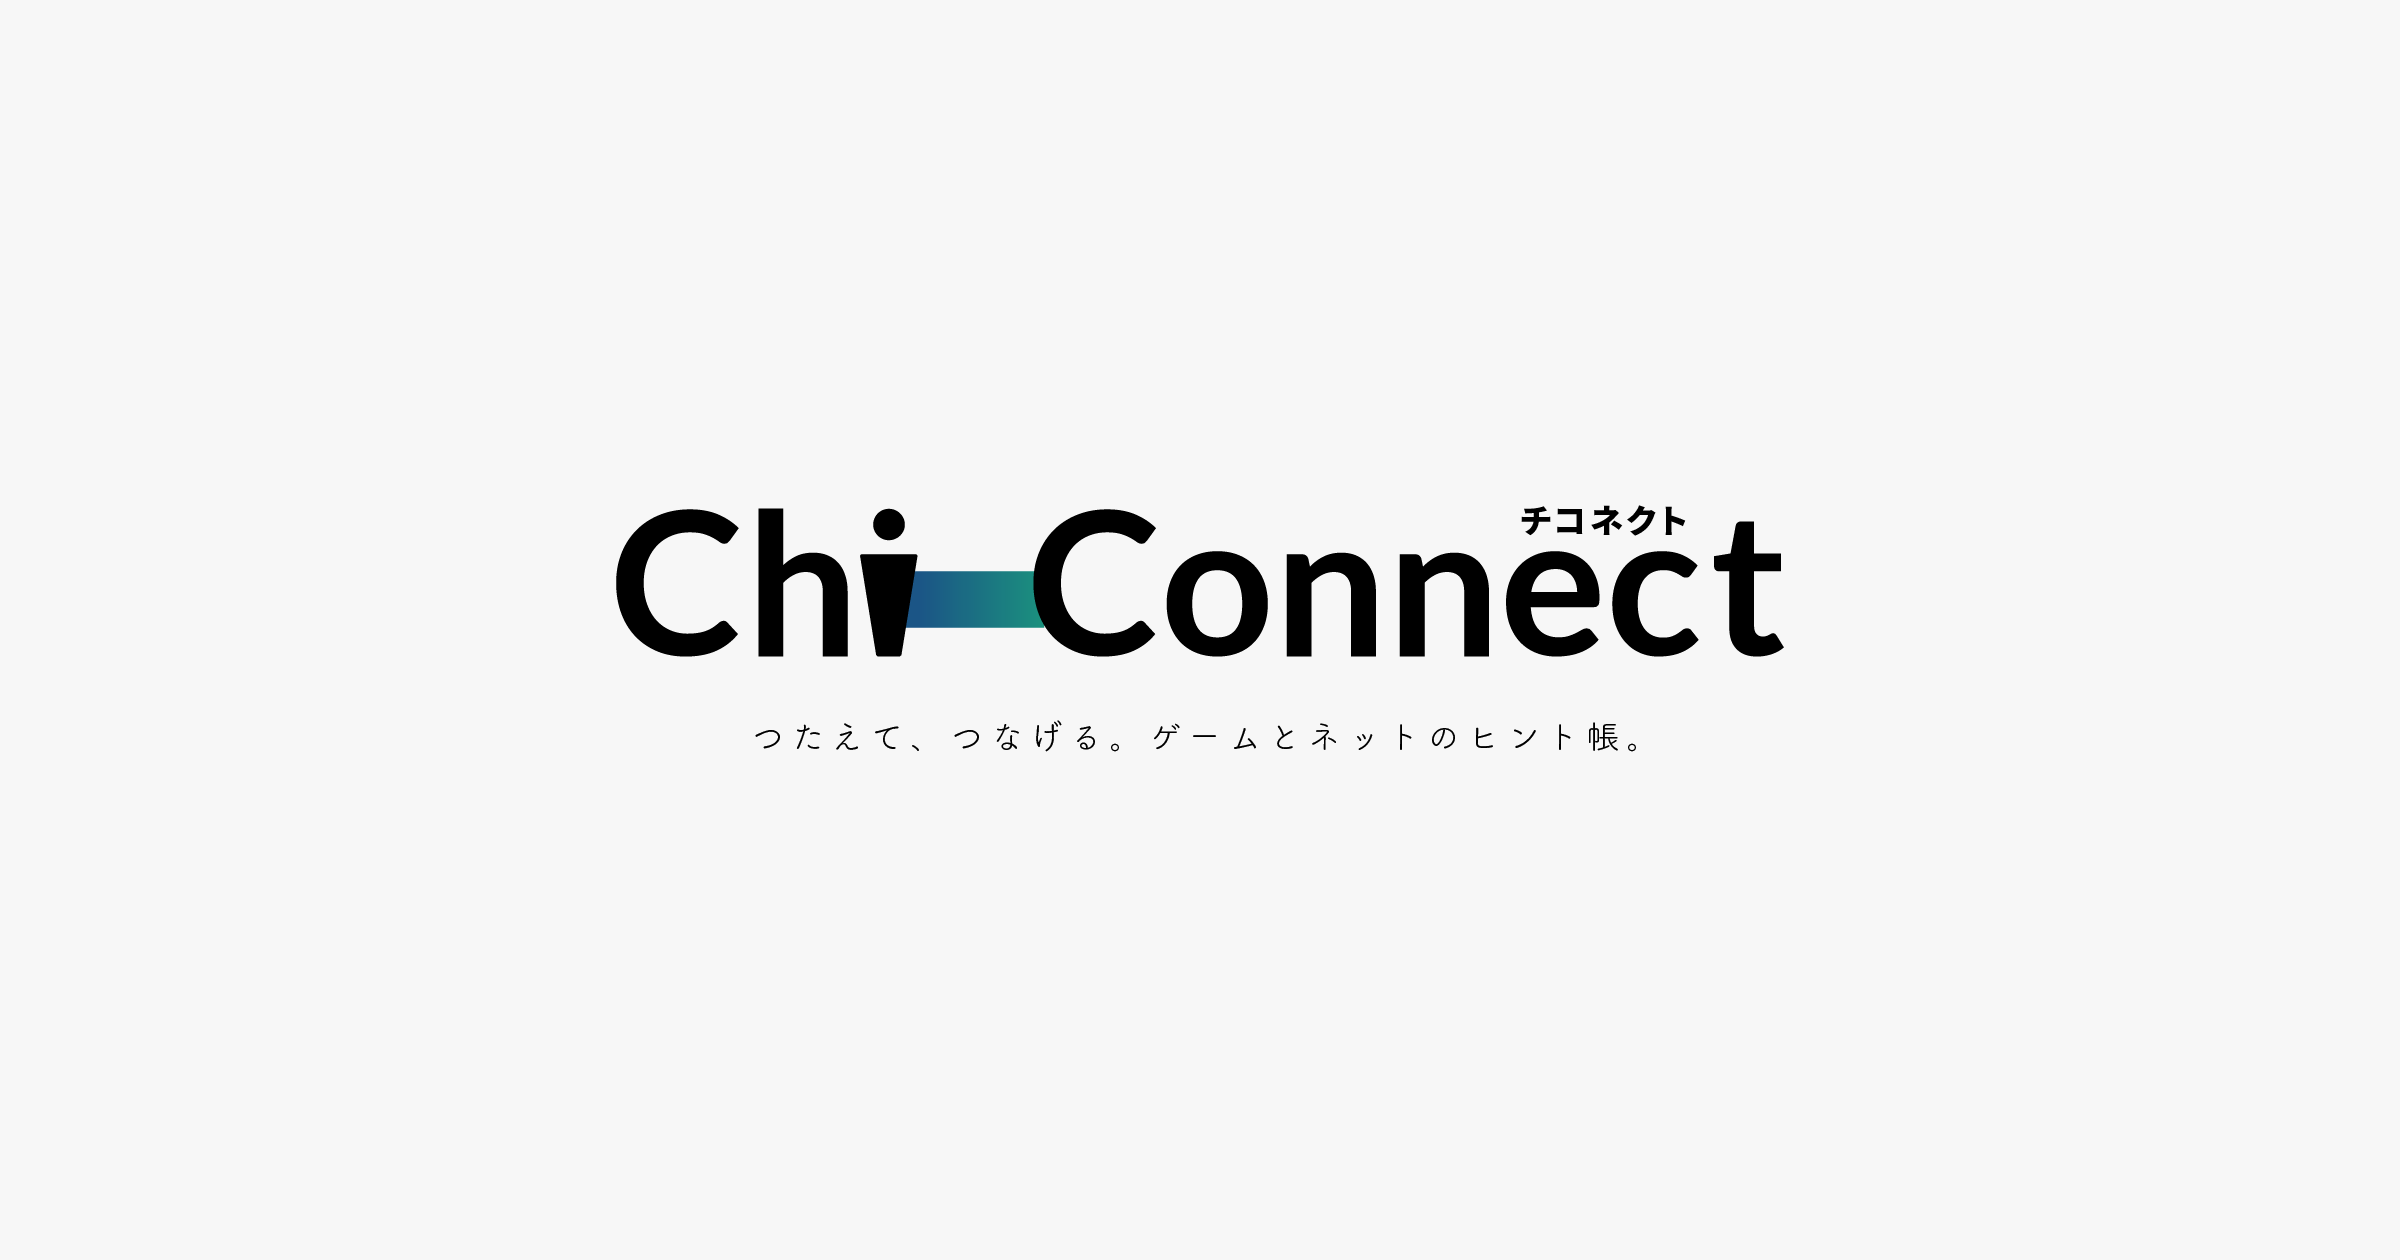 ポケモン サン ムーン ヤドンの入手方法と出現場所 Chi Connect チコネクト つたえて つなげる ゲームとネットのヒント帳